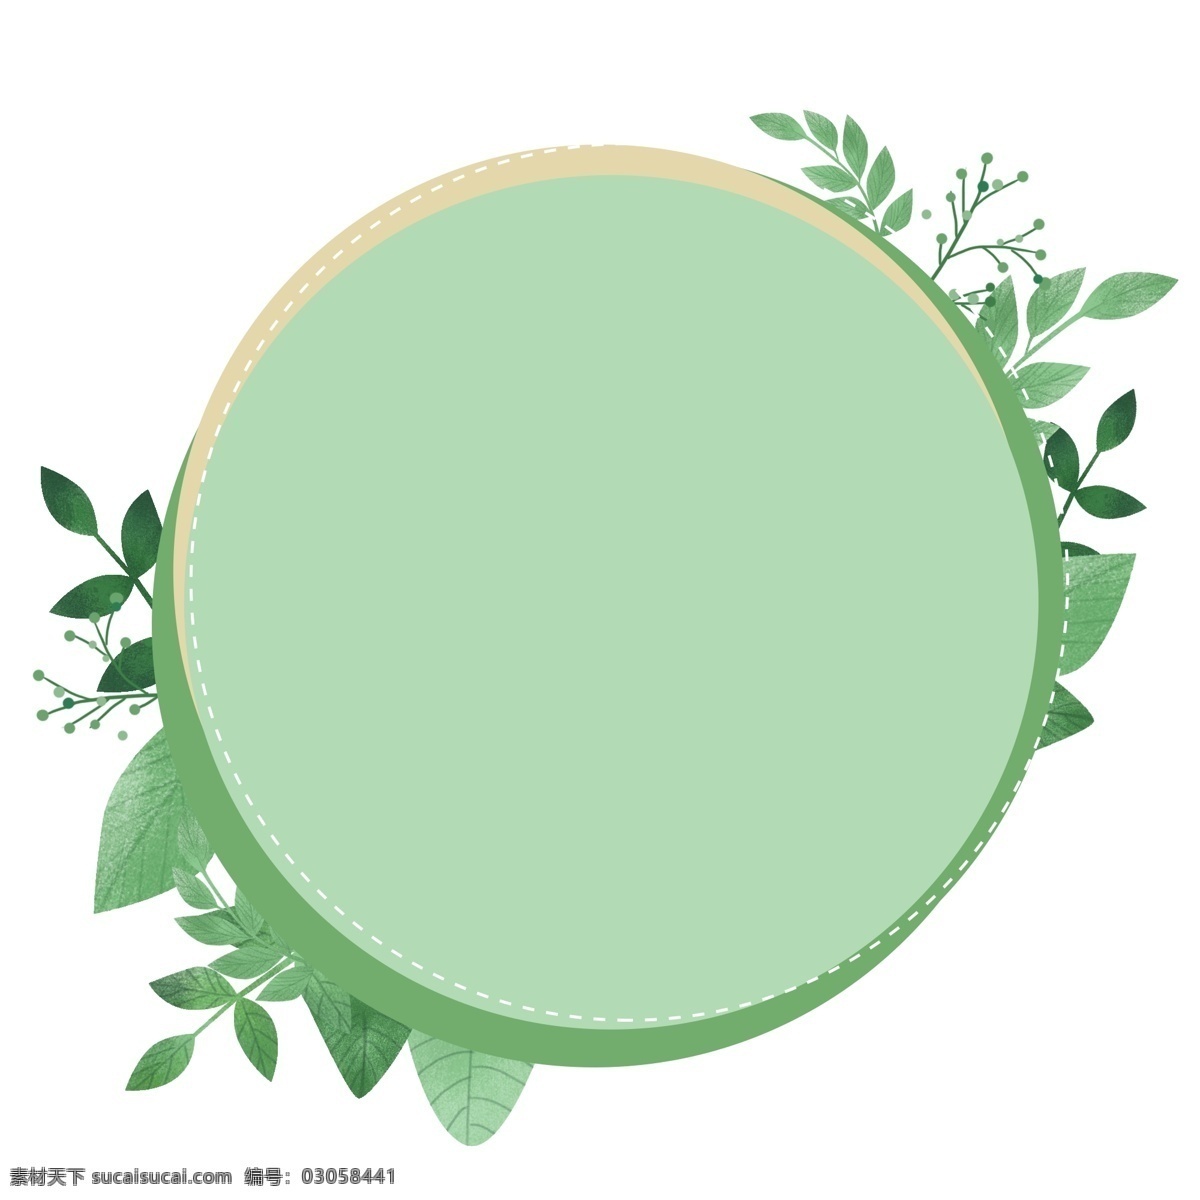 绿色 圆形 植物 边框 几何图形 植物边框 海报装饰 主题边框 手绘 小清新 叶子 绿植 清新 绿色边框